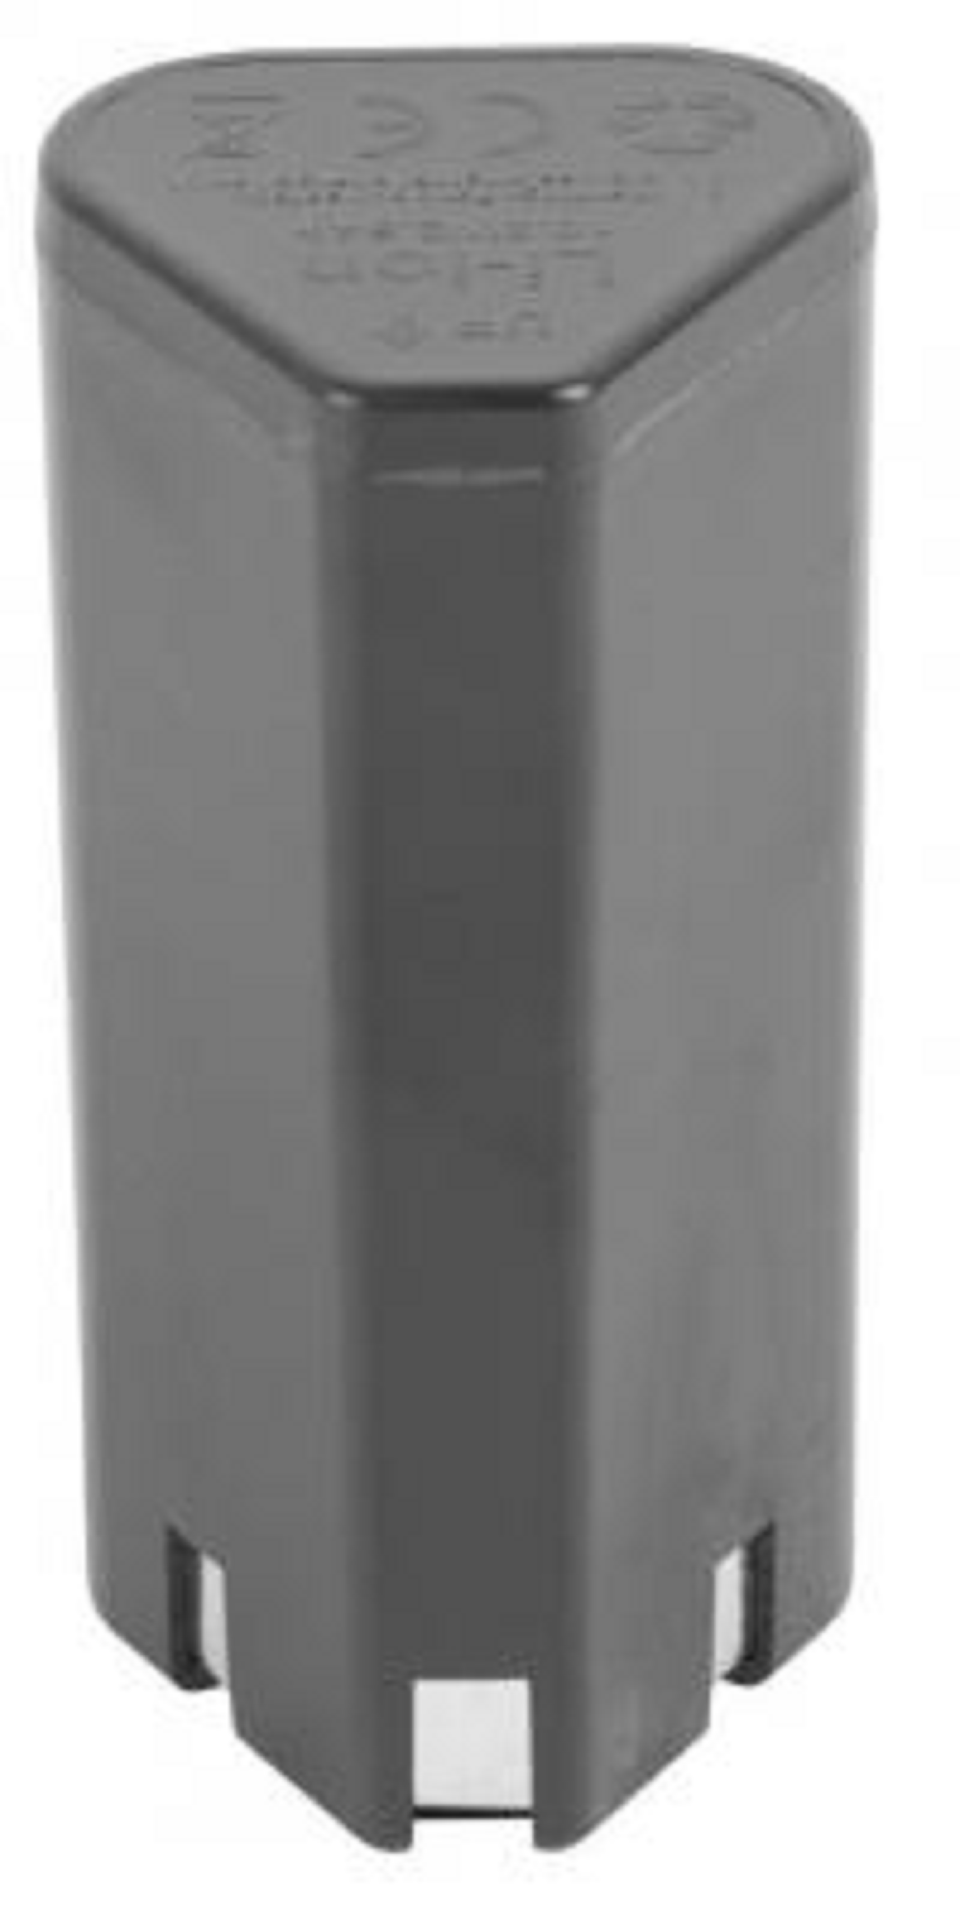 TOMMY Ersatzakku für Drucksprühgerät | 8 Liter | Drucksprüher, Gartenspritze, Sprühgerät, Sprühflasche, Unkrautspritze